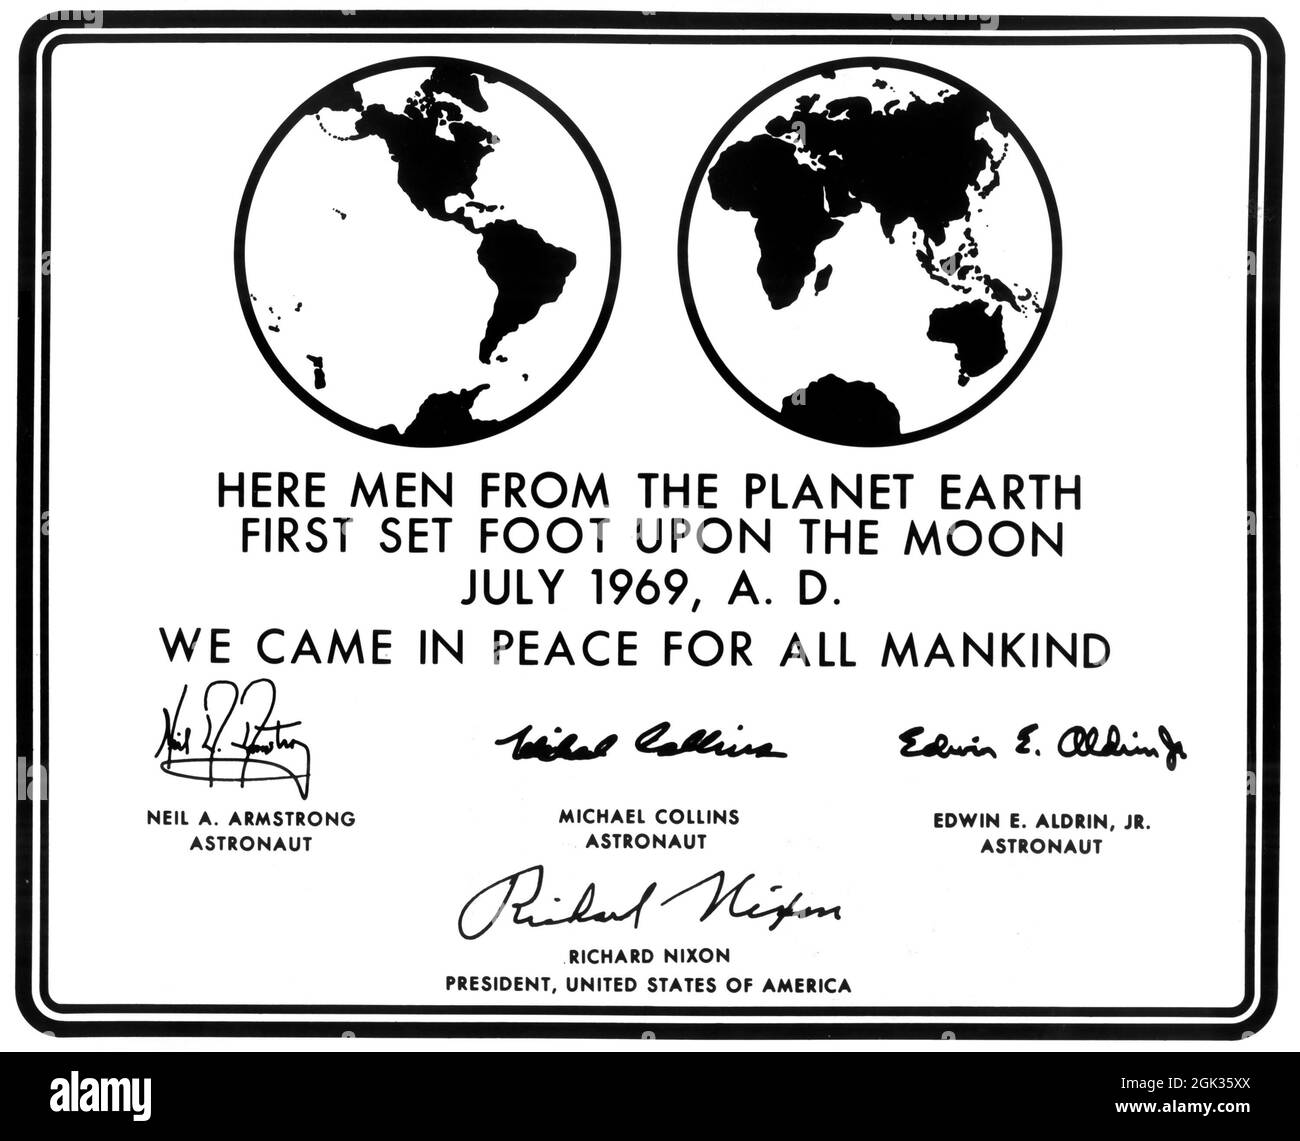 (Luglio 1969) --- questa è una replica della targa che gli astronauti dell'Apollo 11 lasceranno sulla luna per commemorare l'evento storico. La placca è fatta di acciaio inossidabile, che misura nove per sette e cinque-diciottesimi pollici, e uno-sedicesimo pollice spesso. La targa sarà attaccata alla scala sul montante del carrello di atterraggio sulla fase di discesa del modulo lunare Apollo 11 (LM). Coprendo la placca durante il volo sarà presente un sottile foglio di acciaio inossidabile che verrà rimosso sulla superficie lunare. Foto Stock